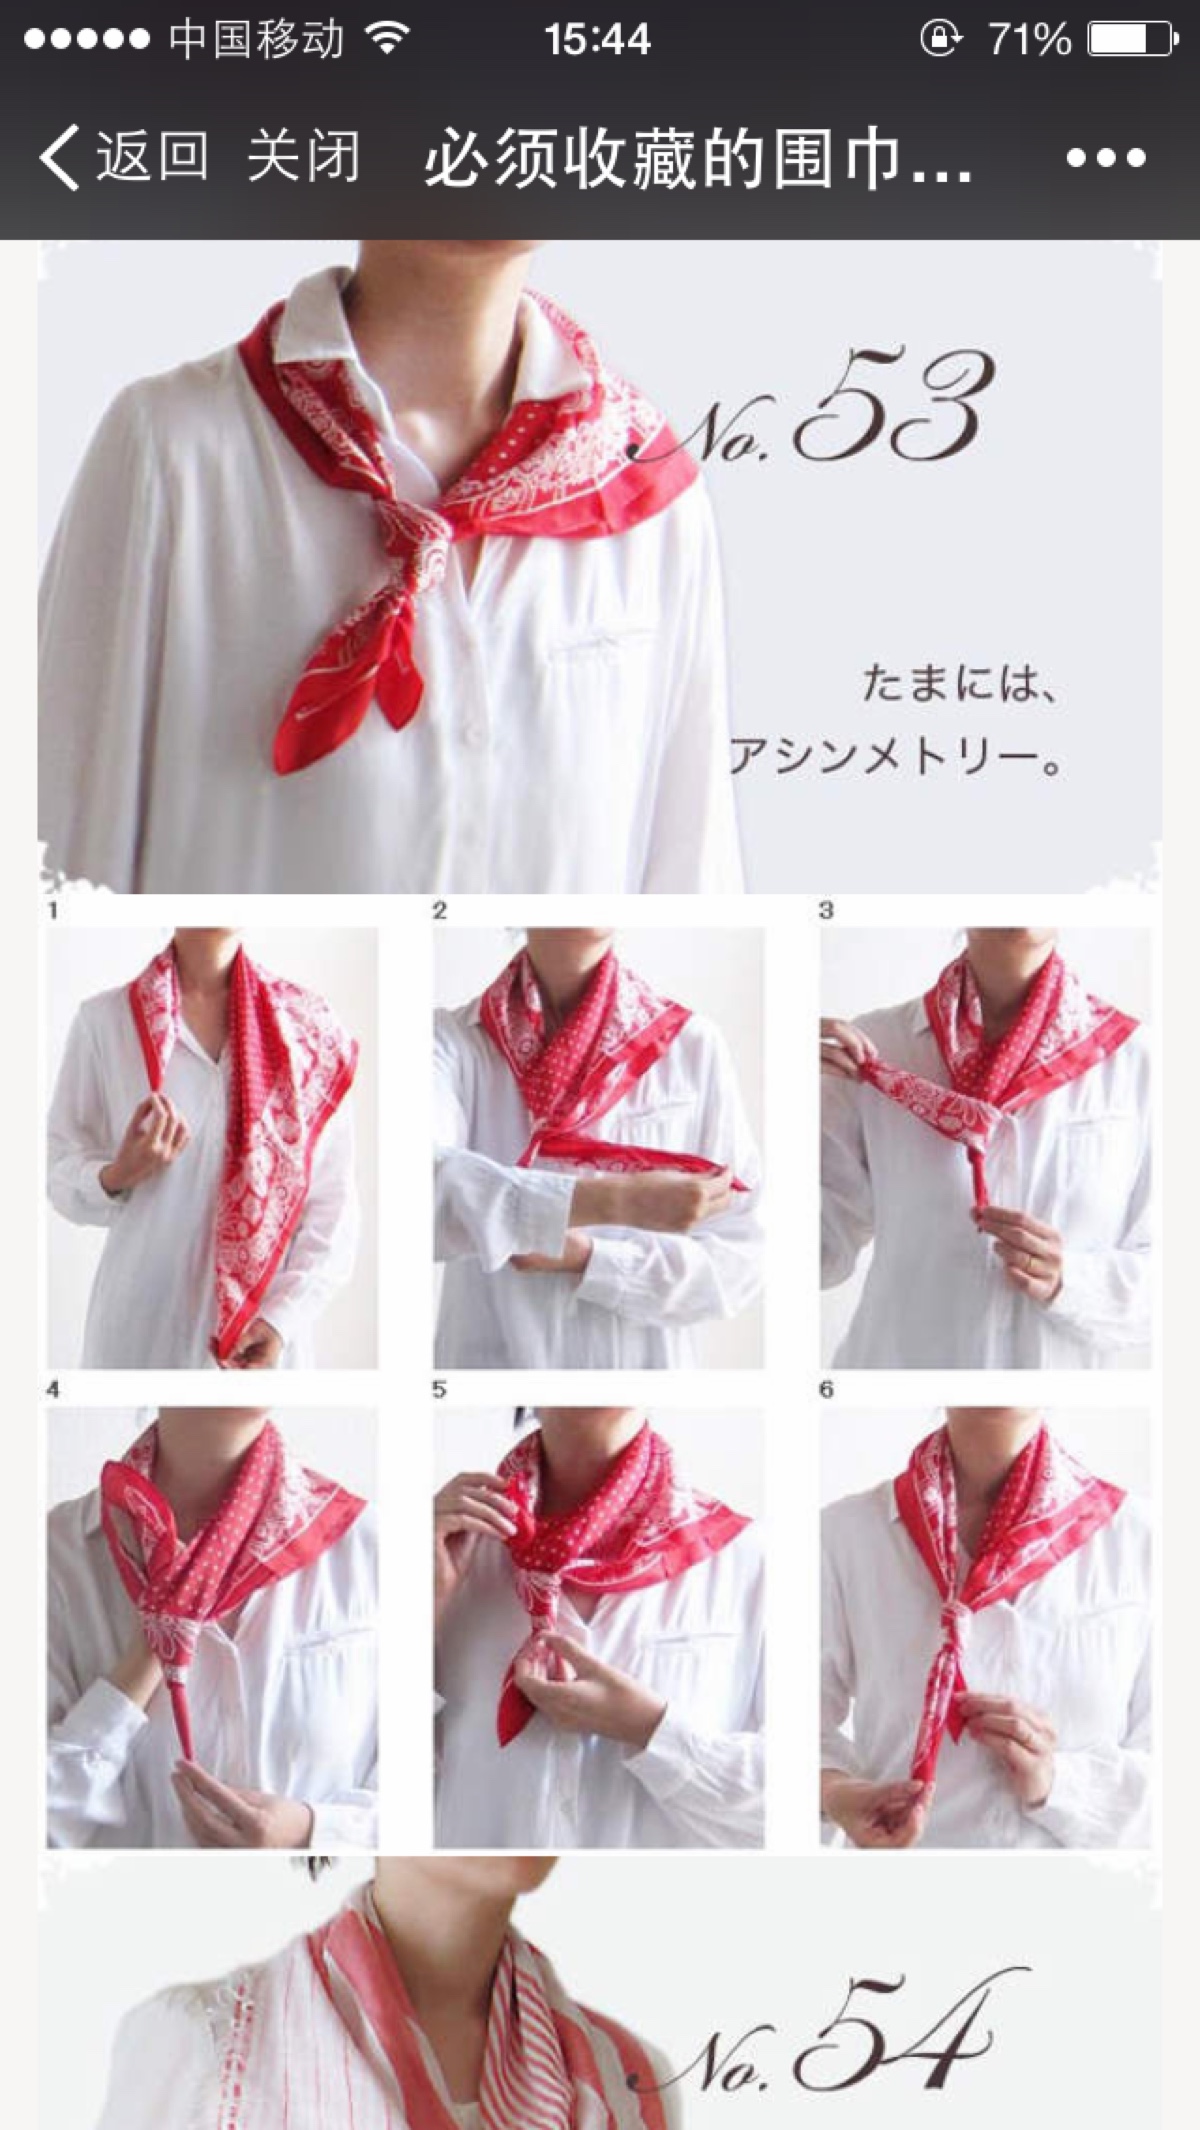 春秋丝巾的各种围法图片